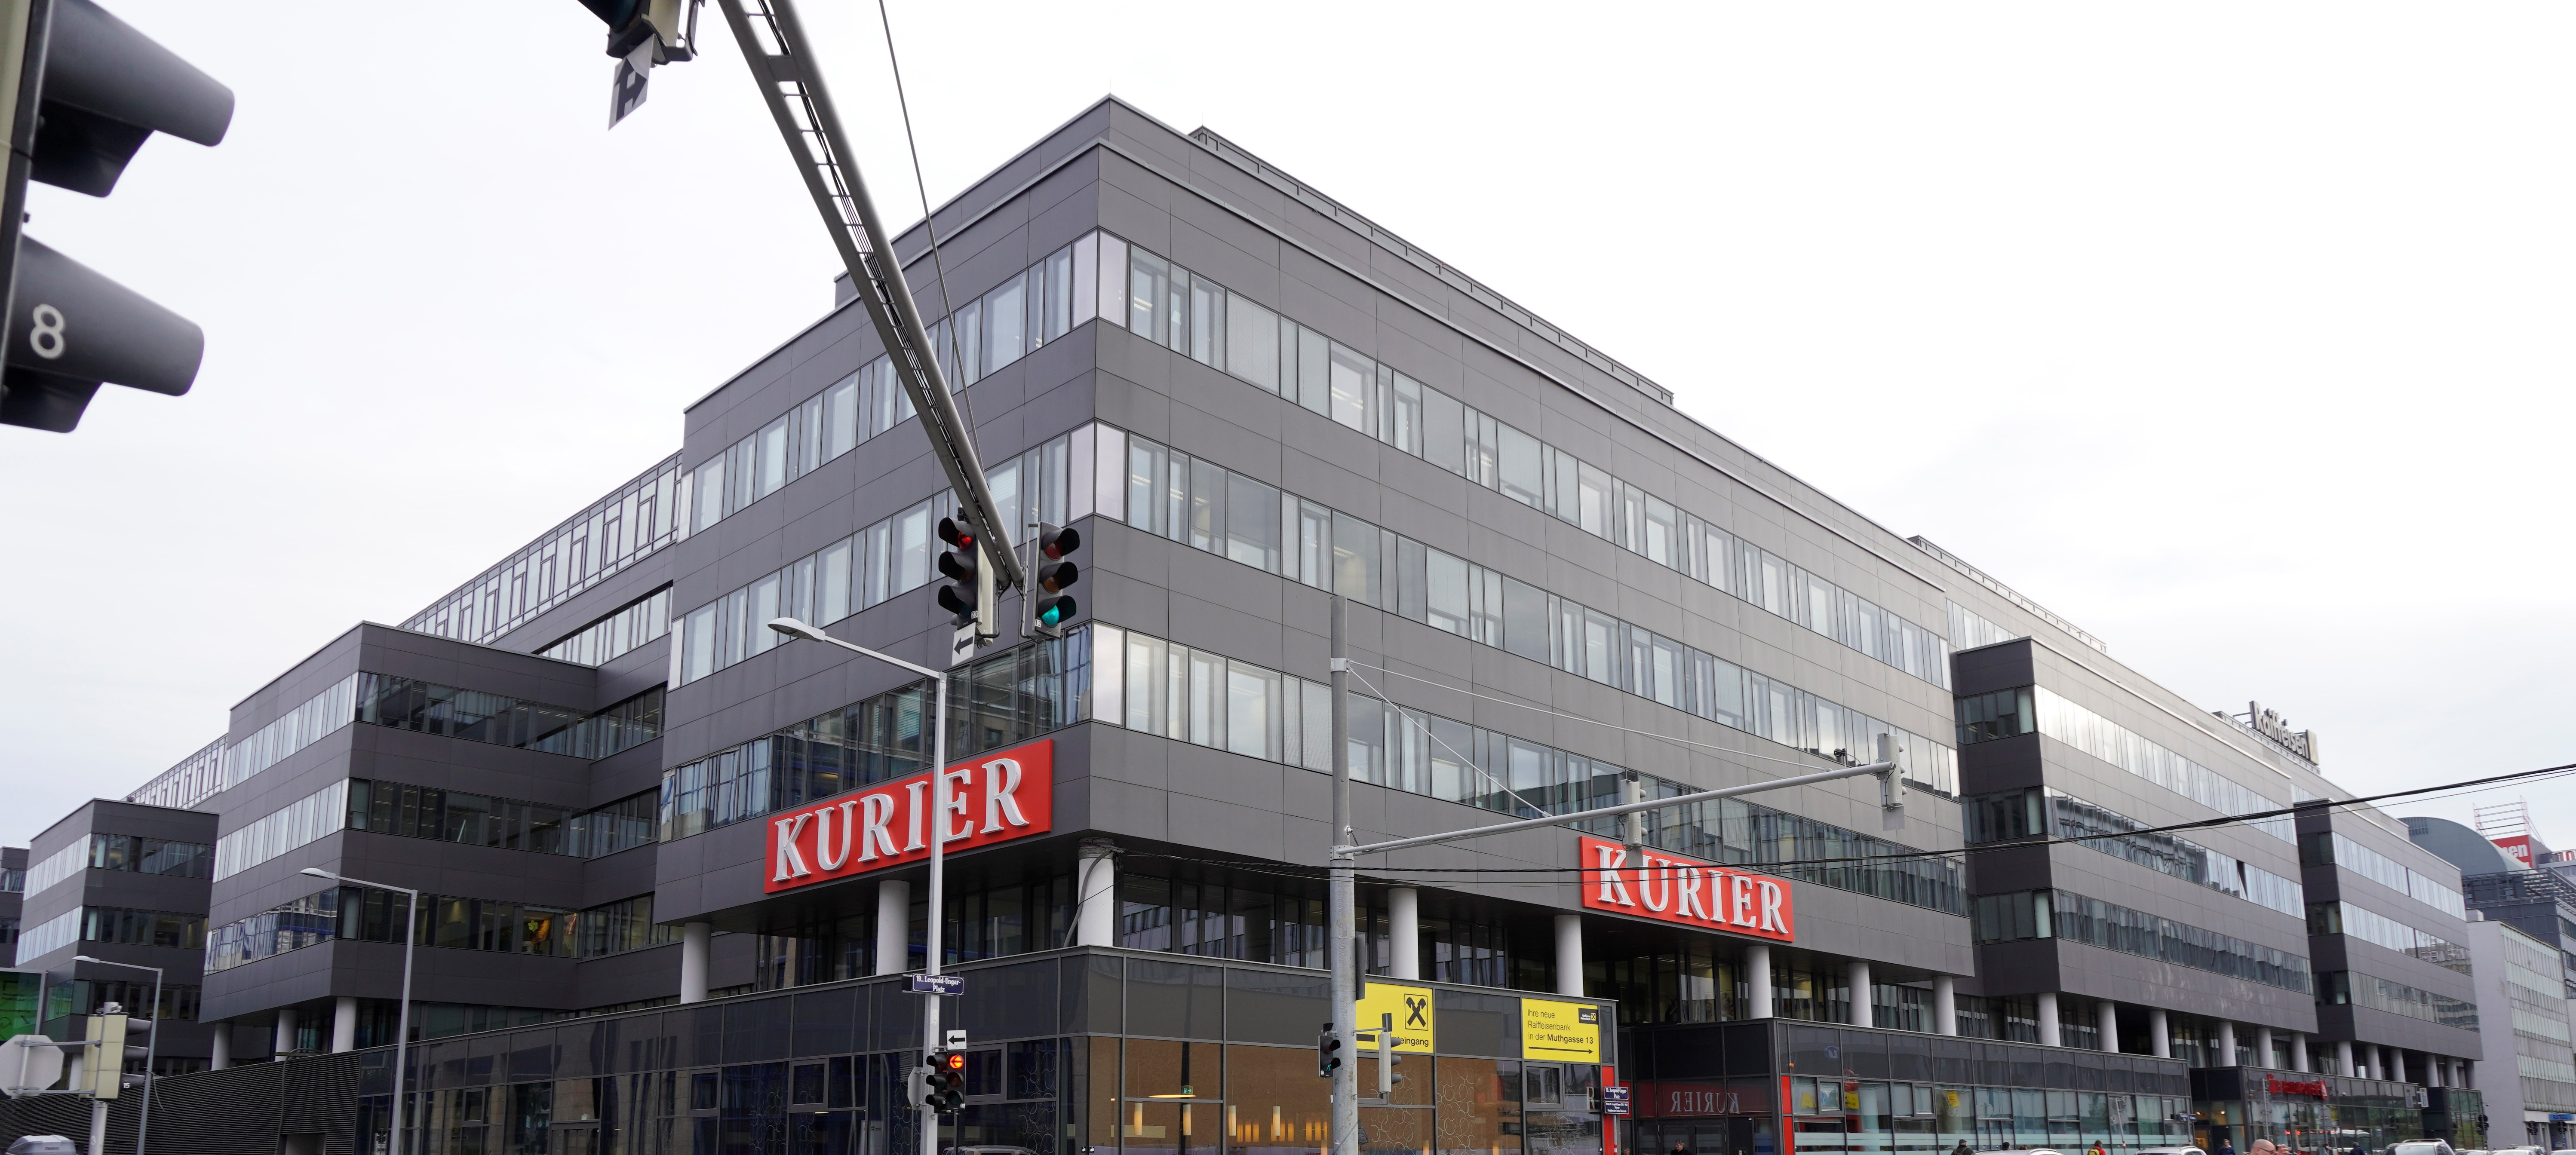 Der Büropark space2move an der Muthgasse 24-34 in Wien wurde mit dem LEED-Zertifikat in Gold für seine nachhaltige Niedrigenergie-Bauweise ausgezeichnet. Die Gebäudeautomation von Kieback&Peter trägt dazu bei.